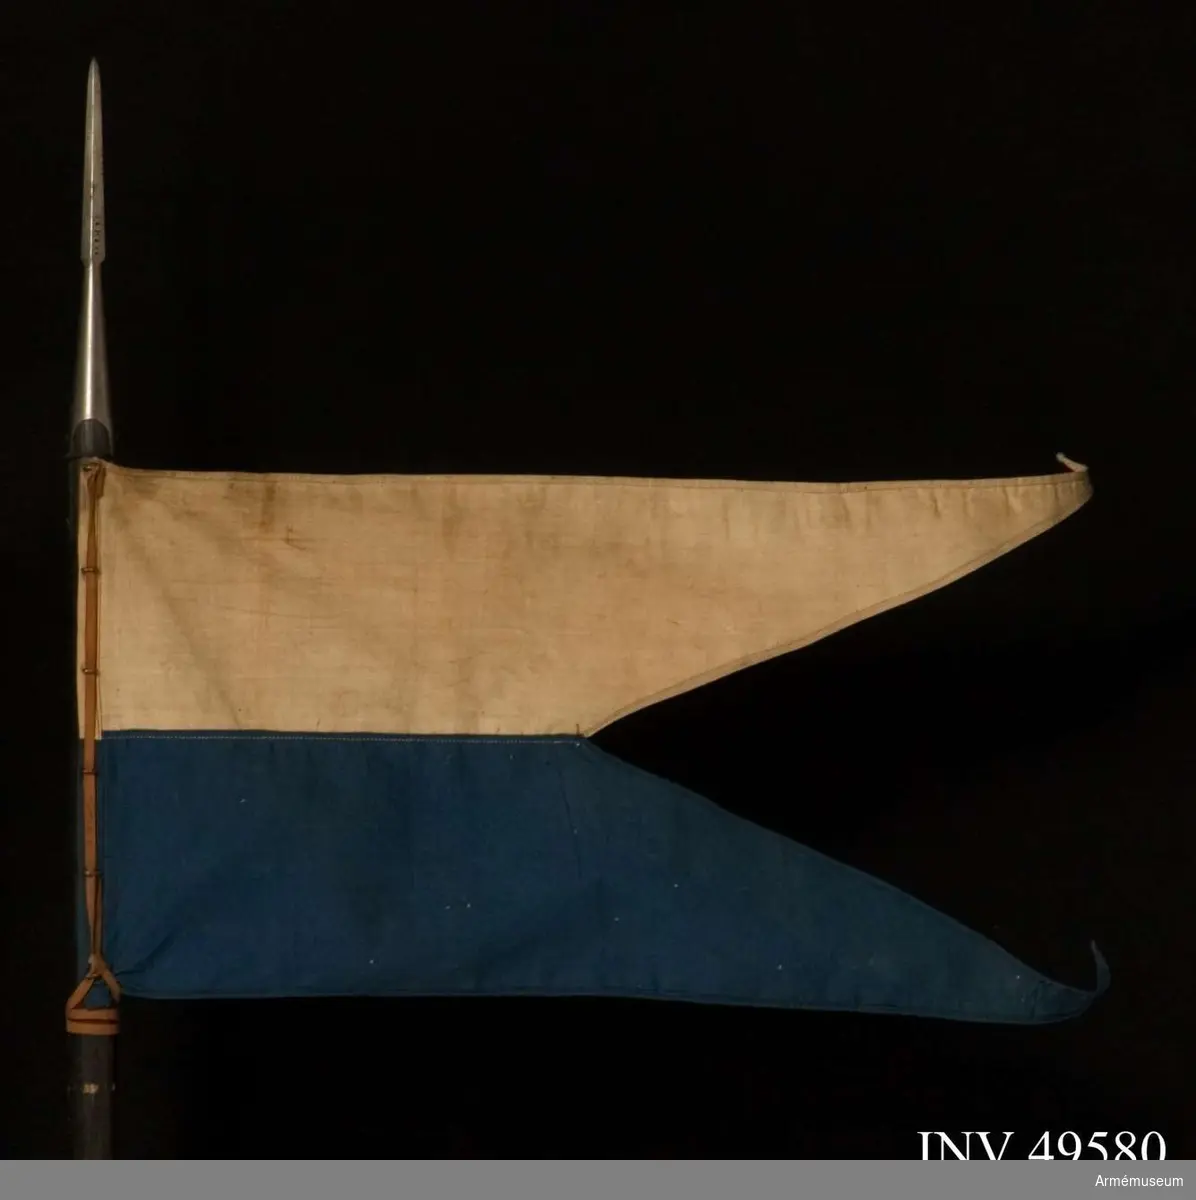 Grupp D I.
Flaggan är av den för de bayerska ulanregementena föreskrivna modellen. Den är tvåtungad, upptill vit och nedtill blå.